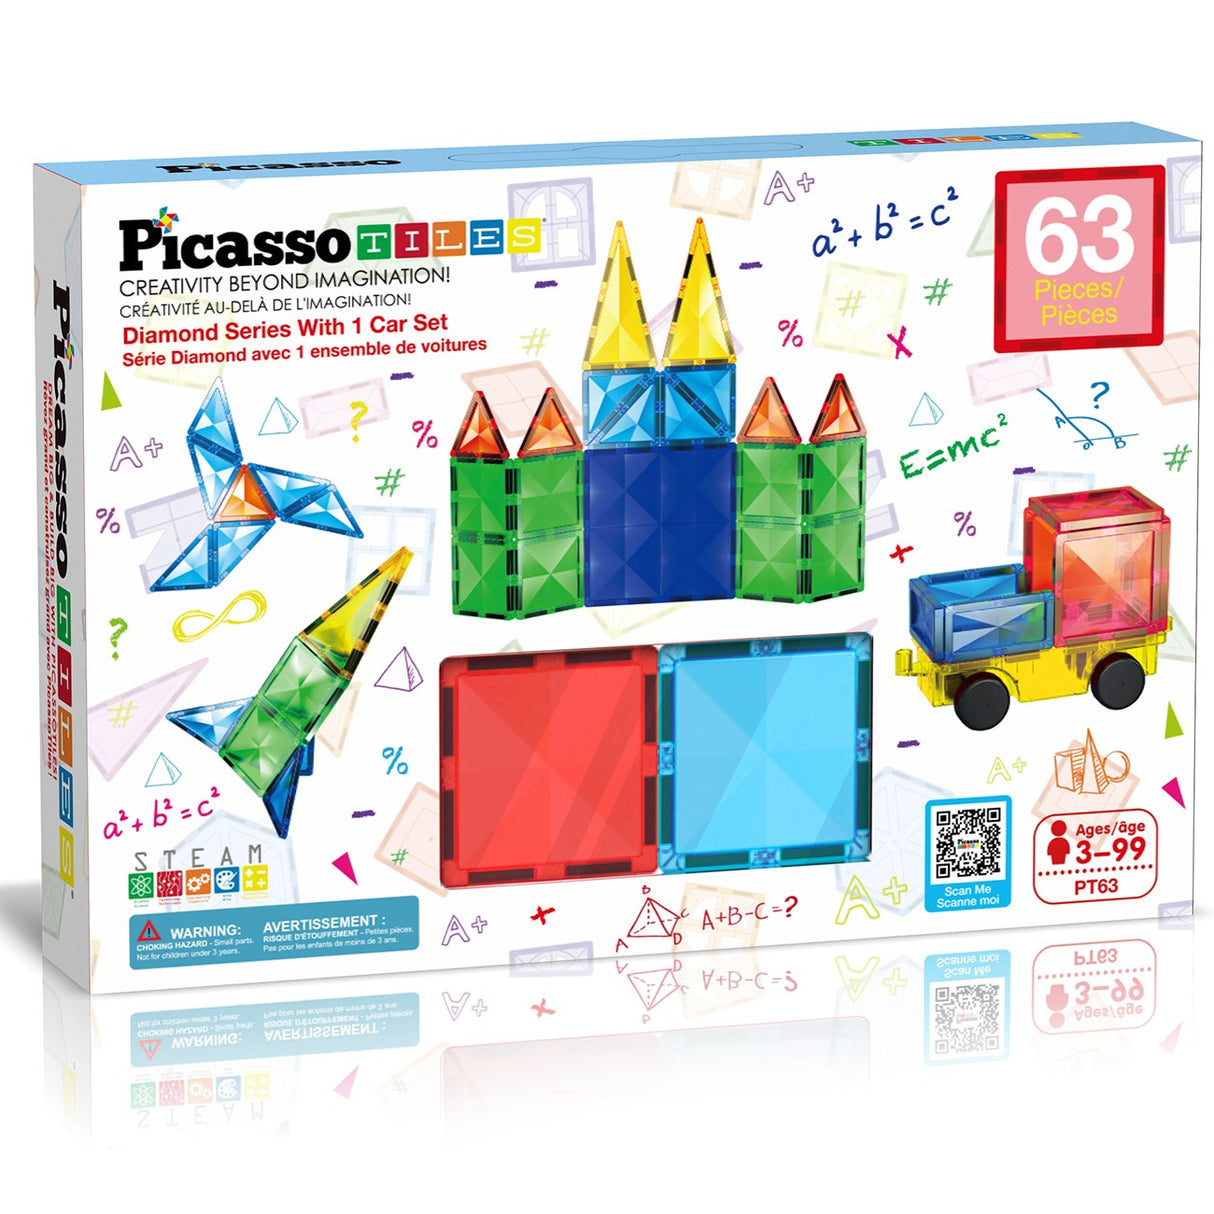 Picasso Tiles   Picasso Tiles Diamond Series Magnetic Tiles set 63pcs building set